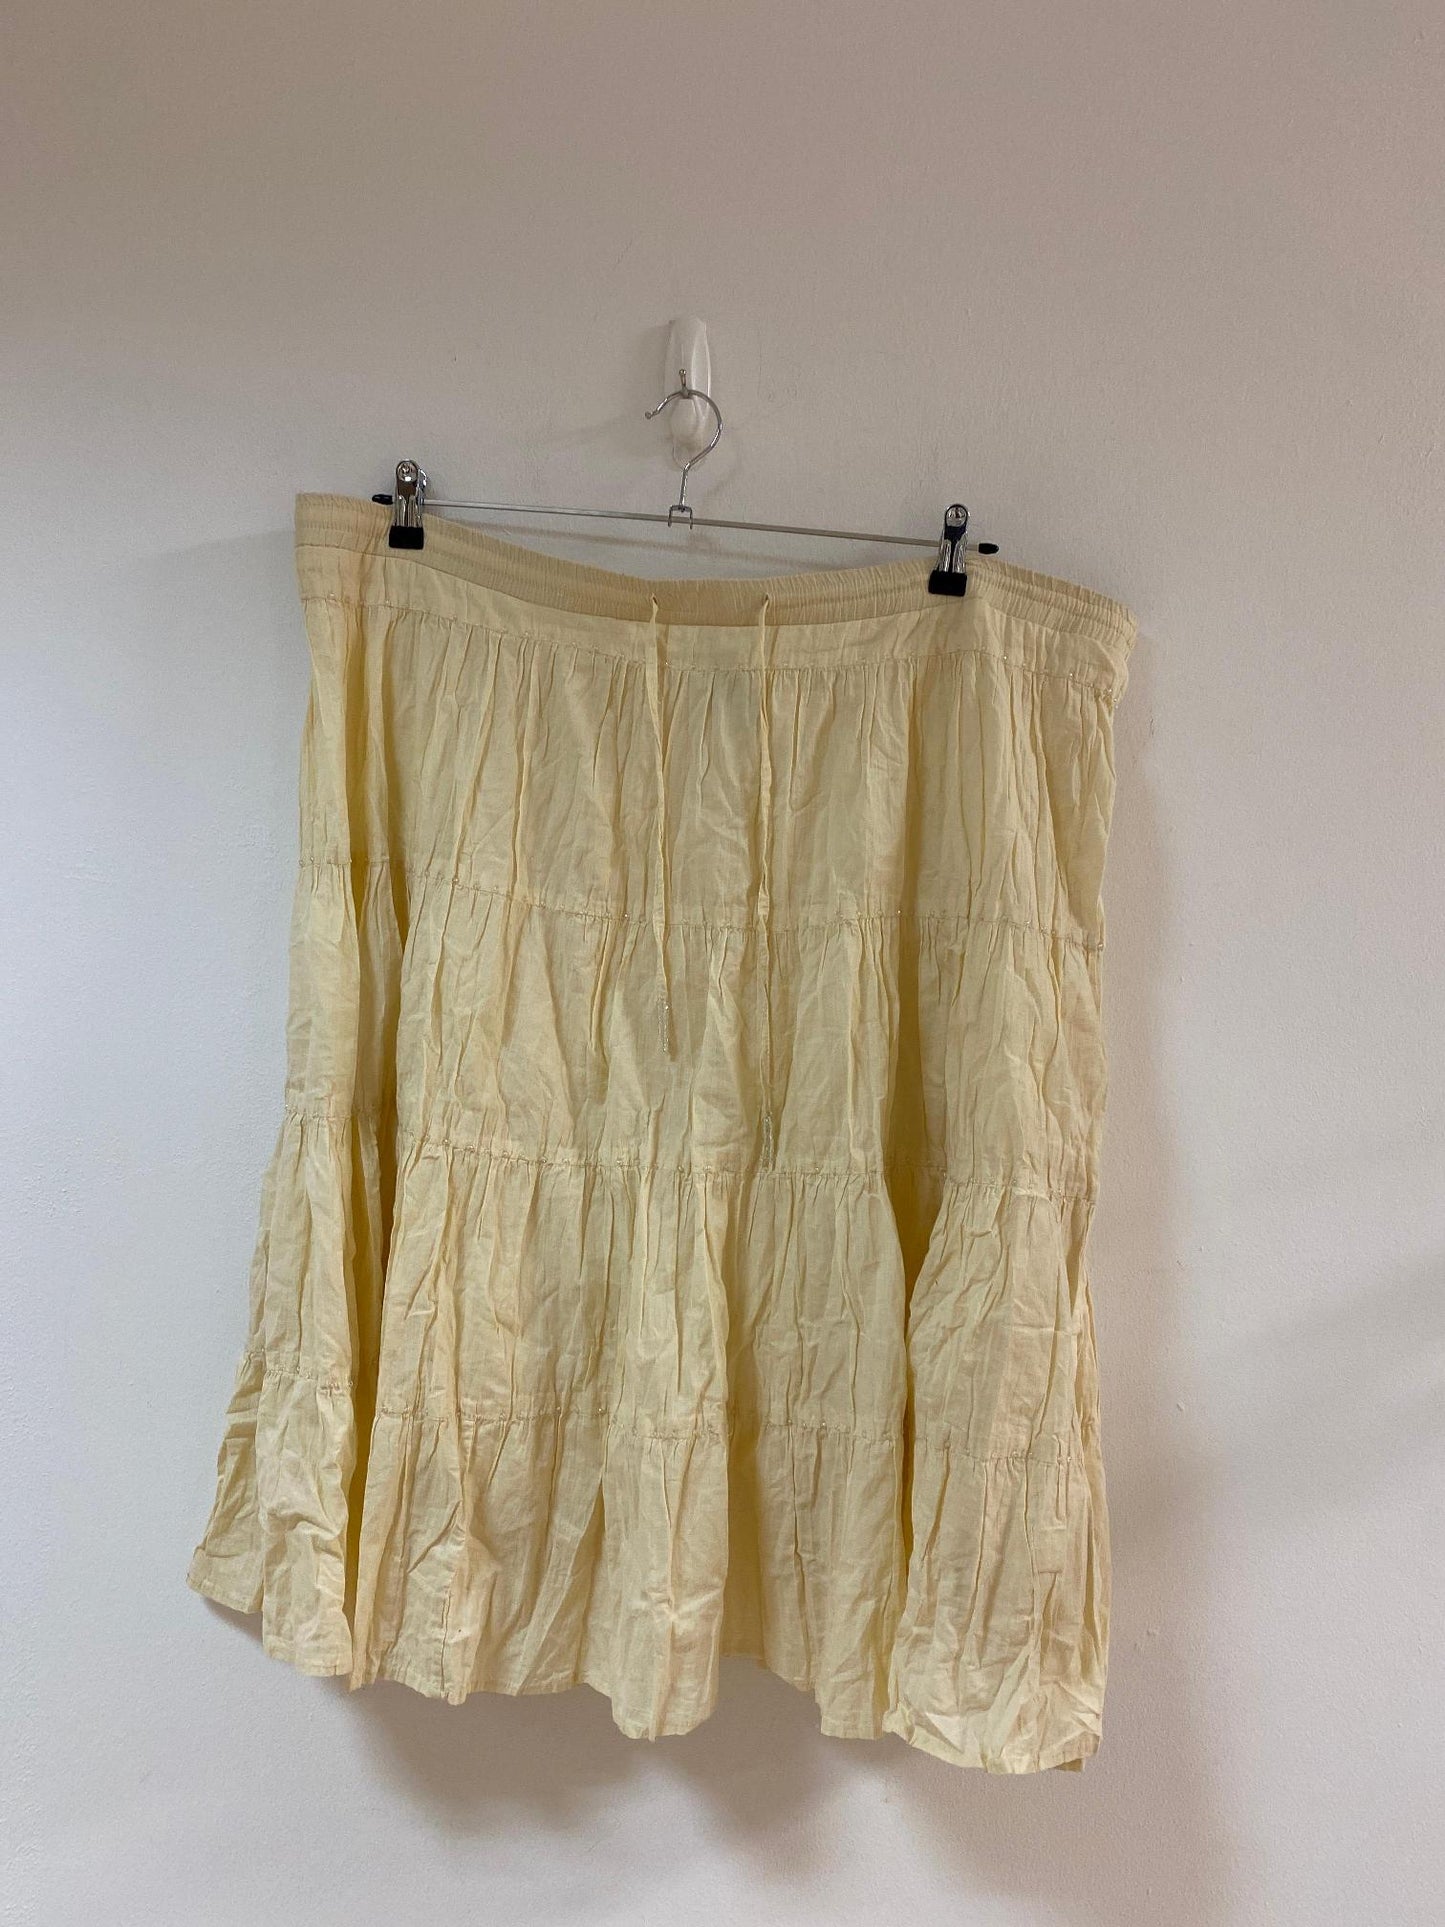 Cream linen look beaded midi skirt, Masti, Size 24 (Cotton)